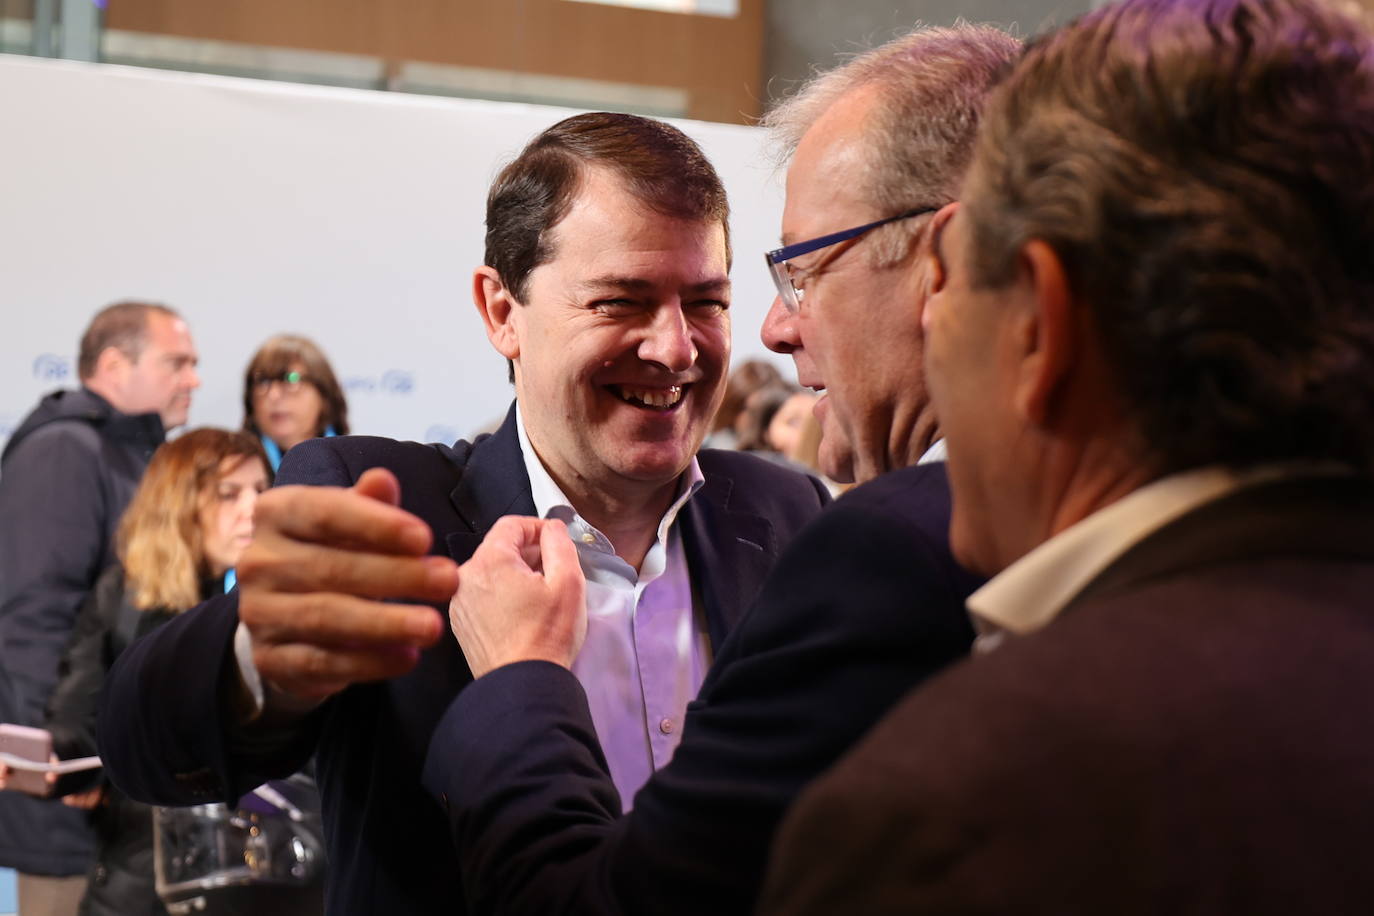 El presidente del Partido Popular en Castilla y León, Alfonso Fernández Mañueco, interviene en la presentación de los candidatos autonómicos del Partido Popular en Zaragoza.